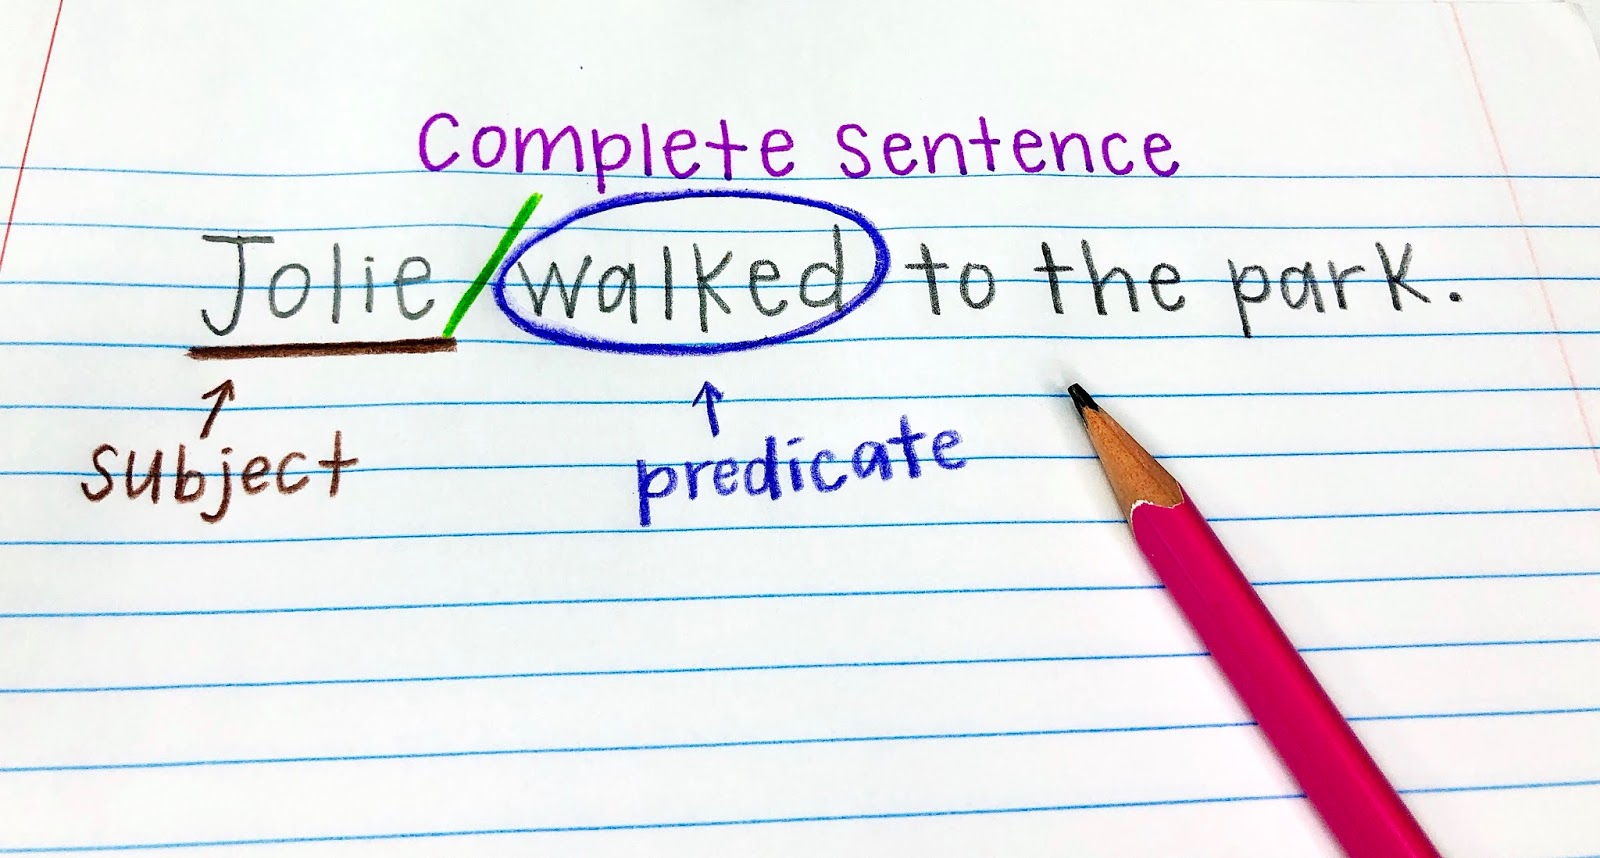 Complete Sentences - Year 3 - Quizizz